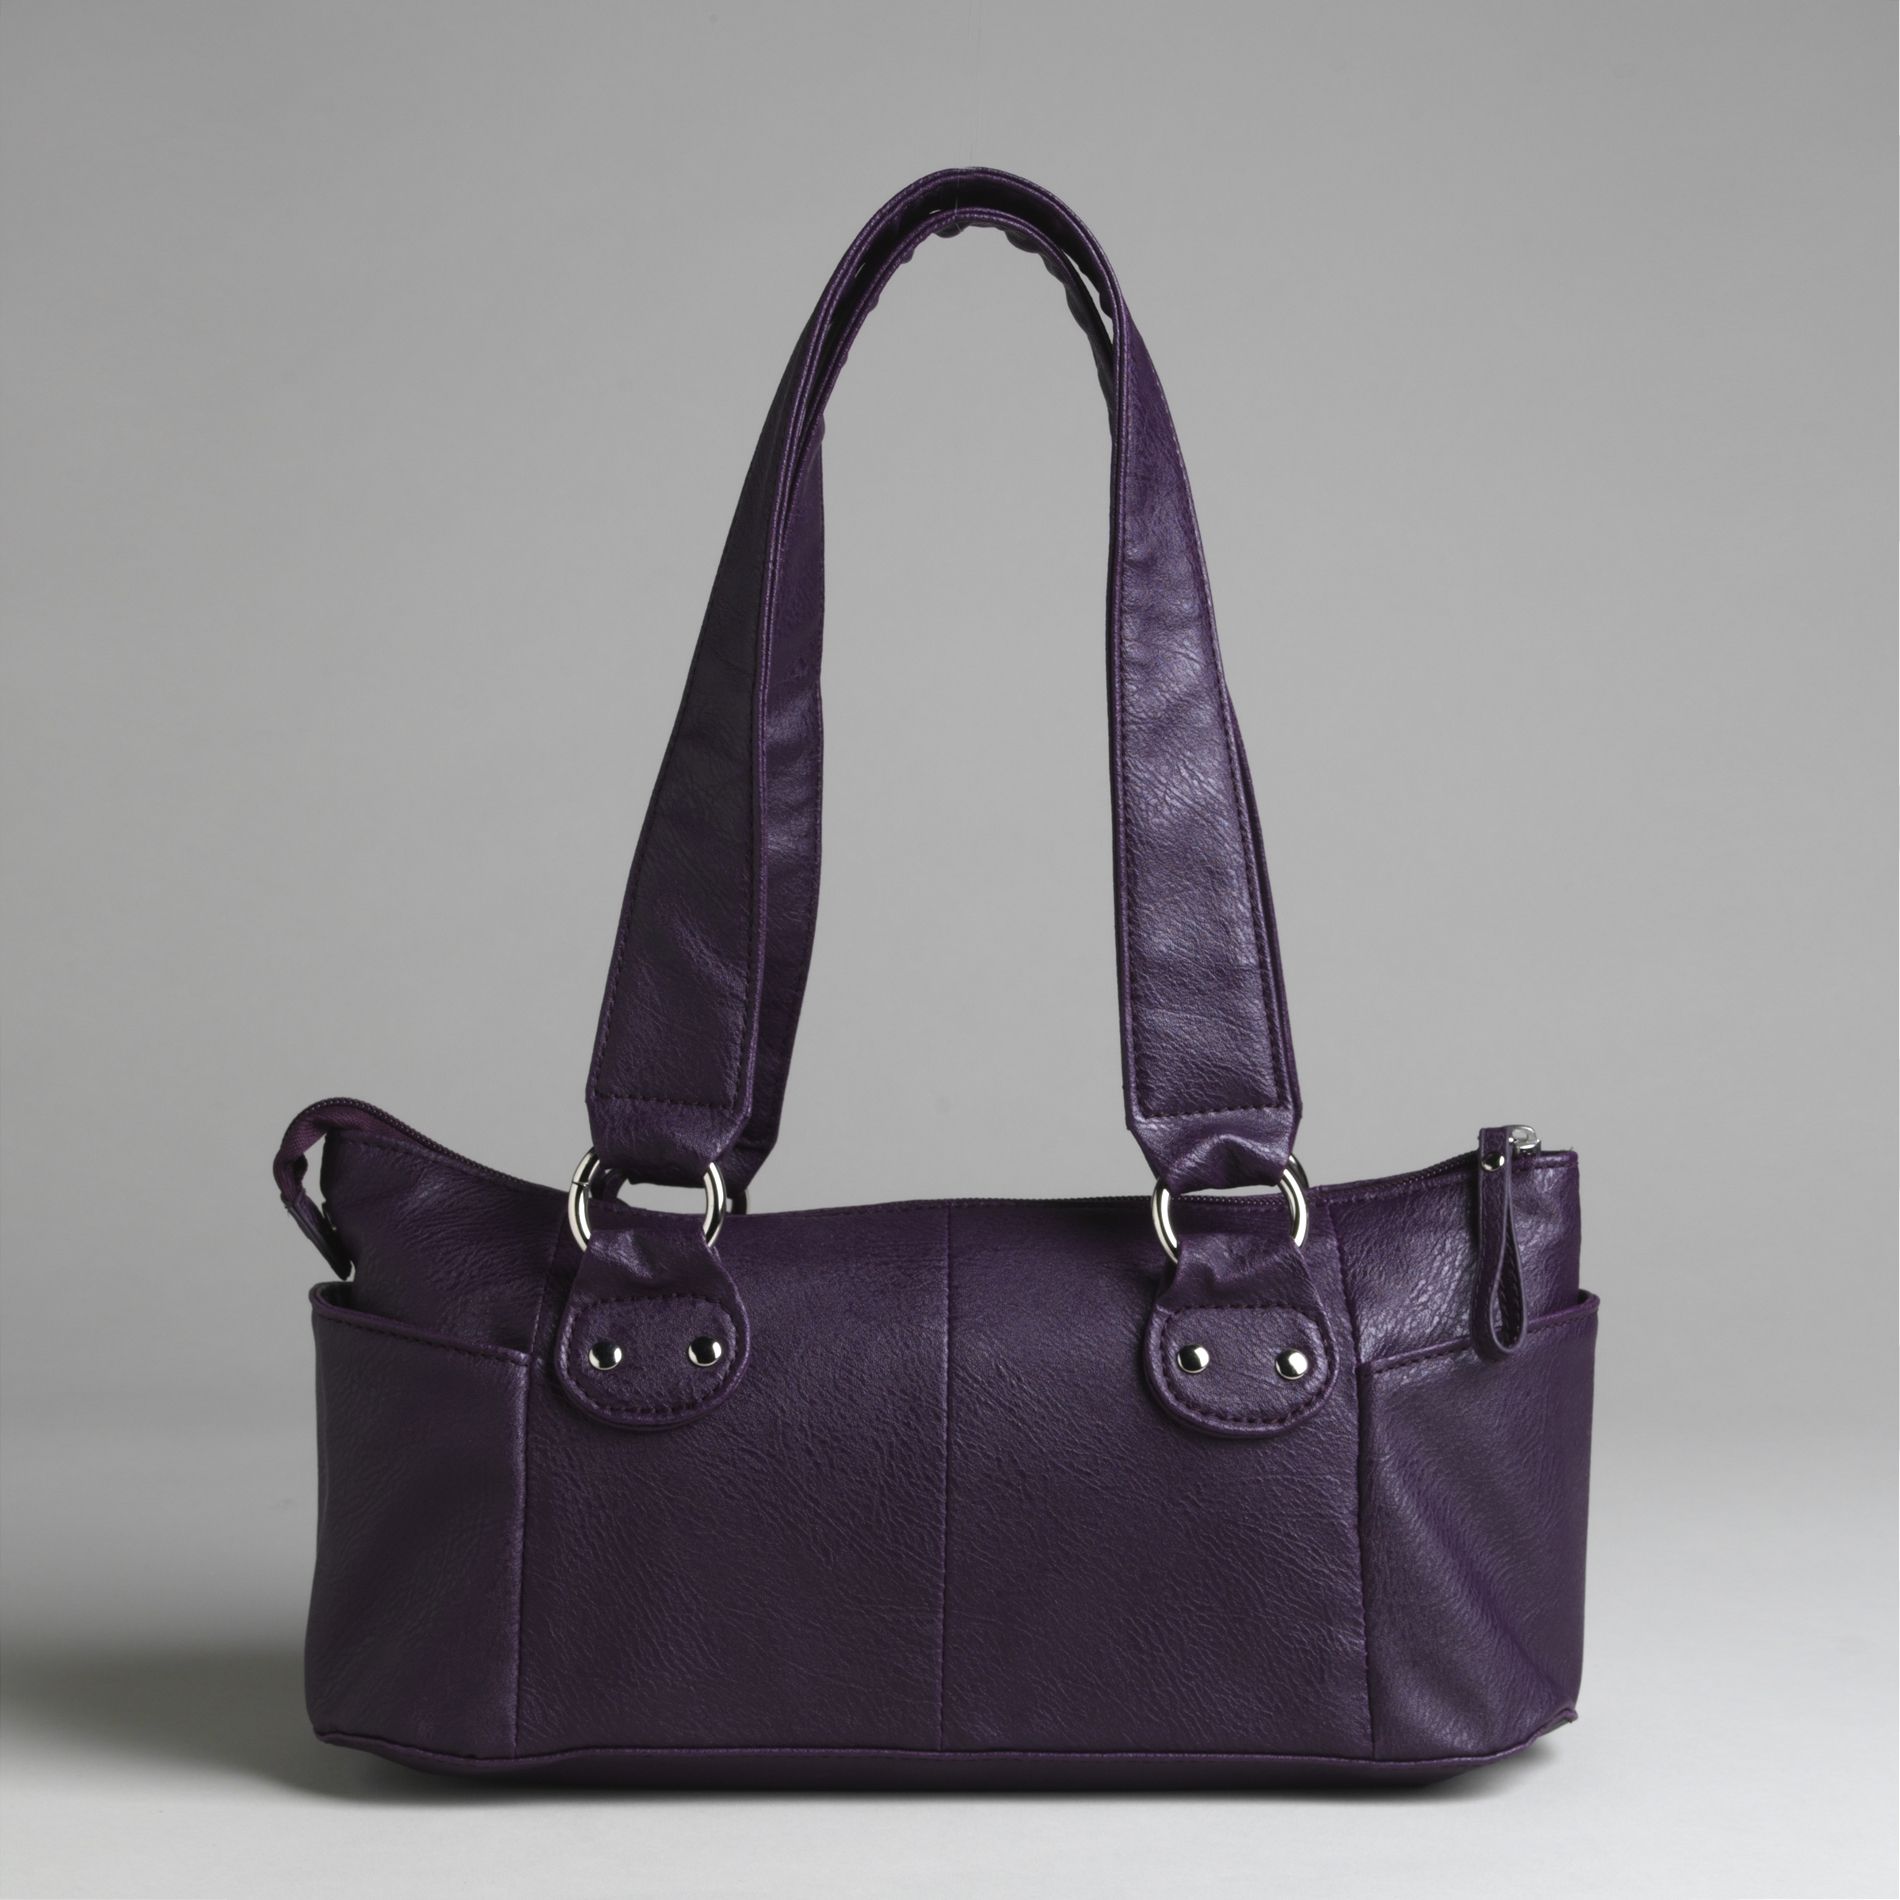 Butler Essentials Women's Satchel Style Handbag